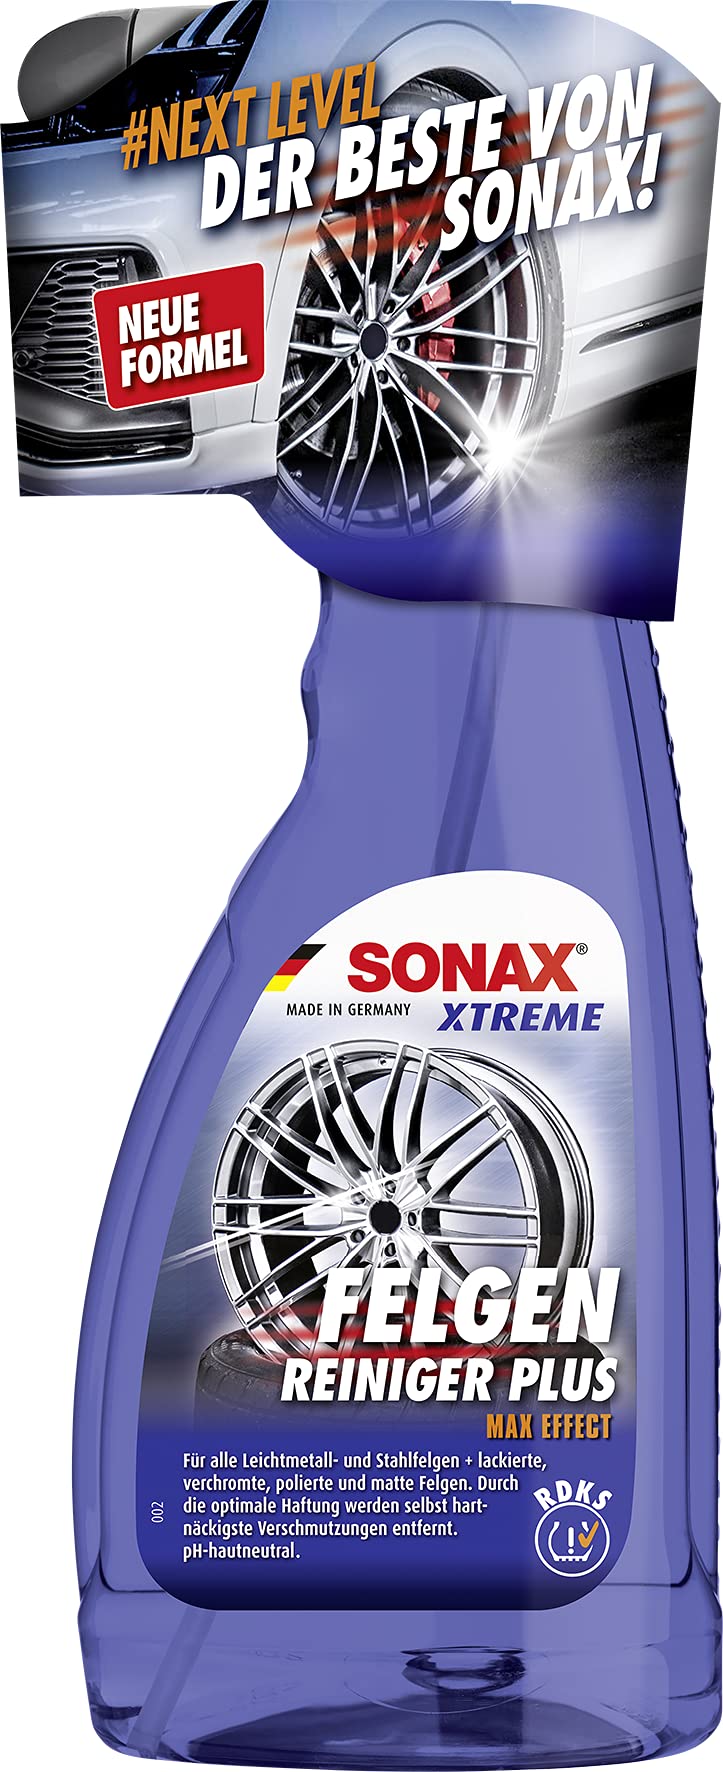 SONAX XTREME FelgenReiniger PLUS (500 ml) effiziente Reinigung aller Leichtmetall- und Stahlfelgen sowie lackierte, verchromte und polierte Felgen | Art-Nr. 02302090 von SONAX